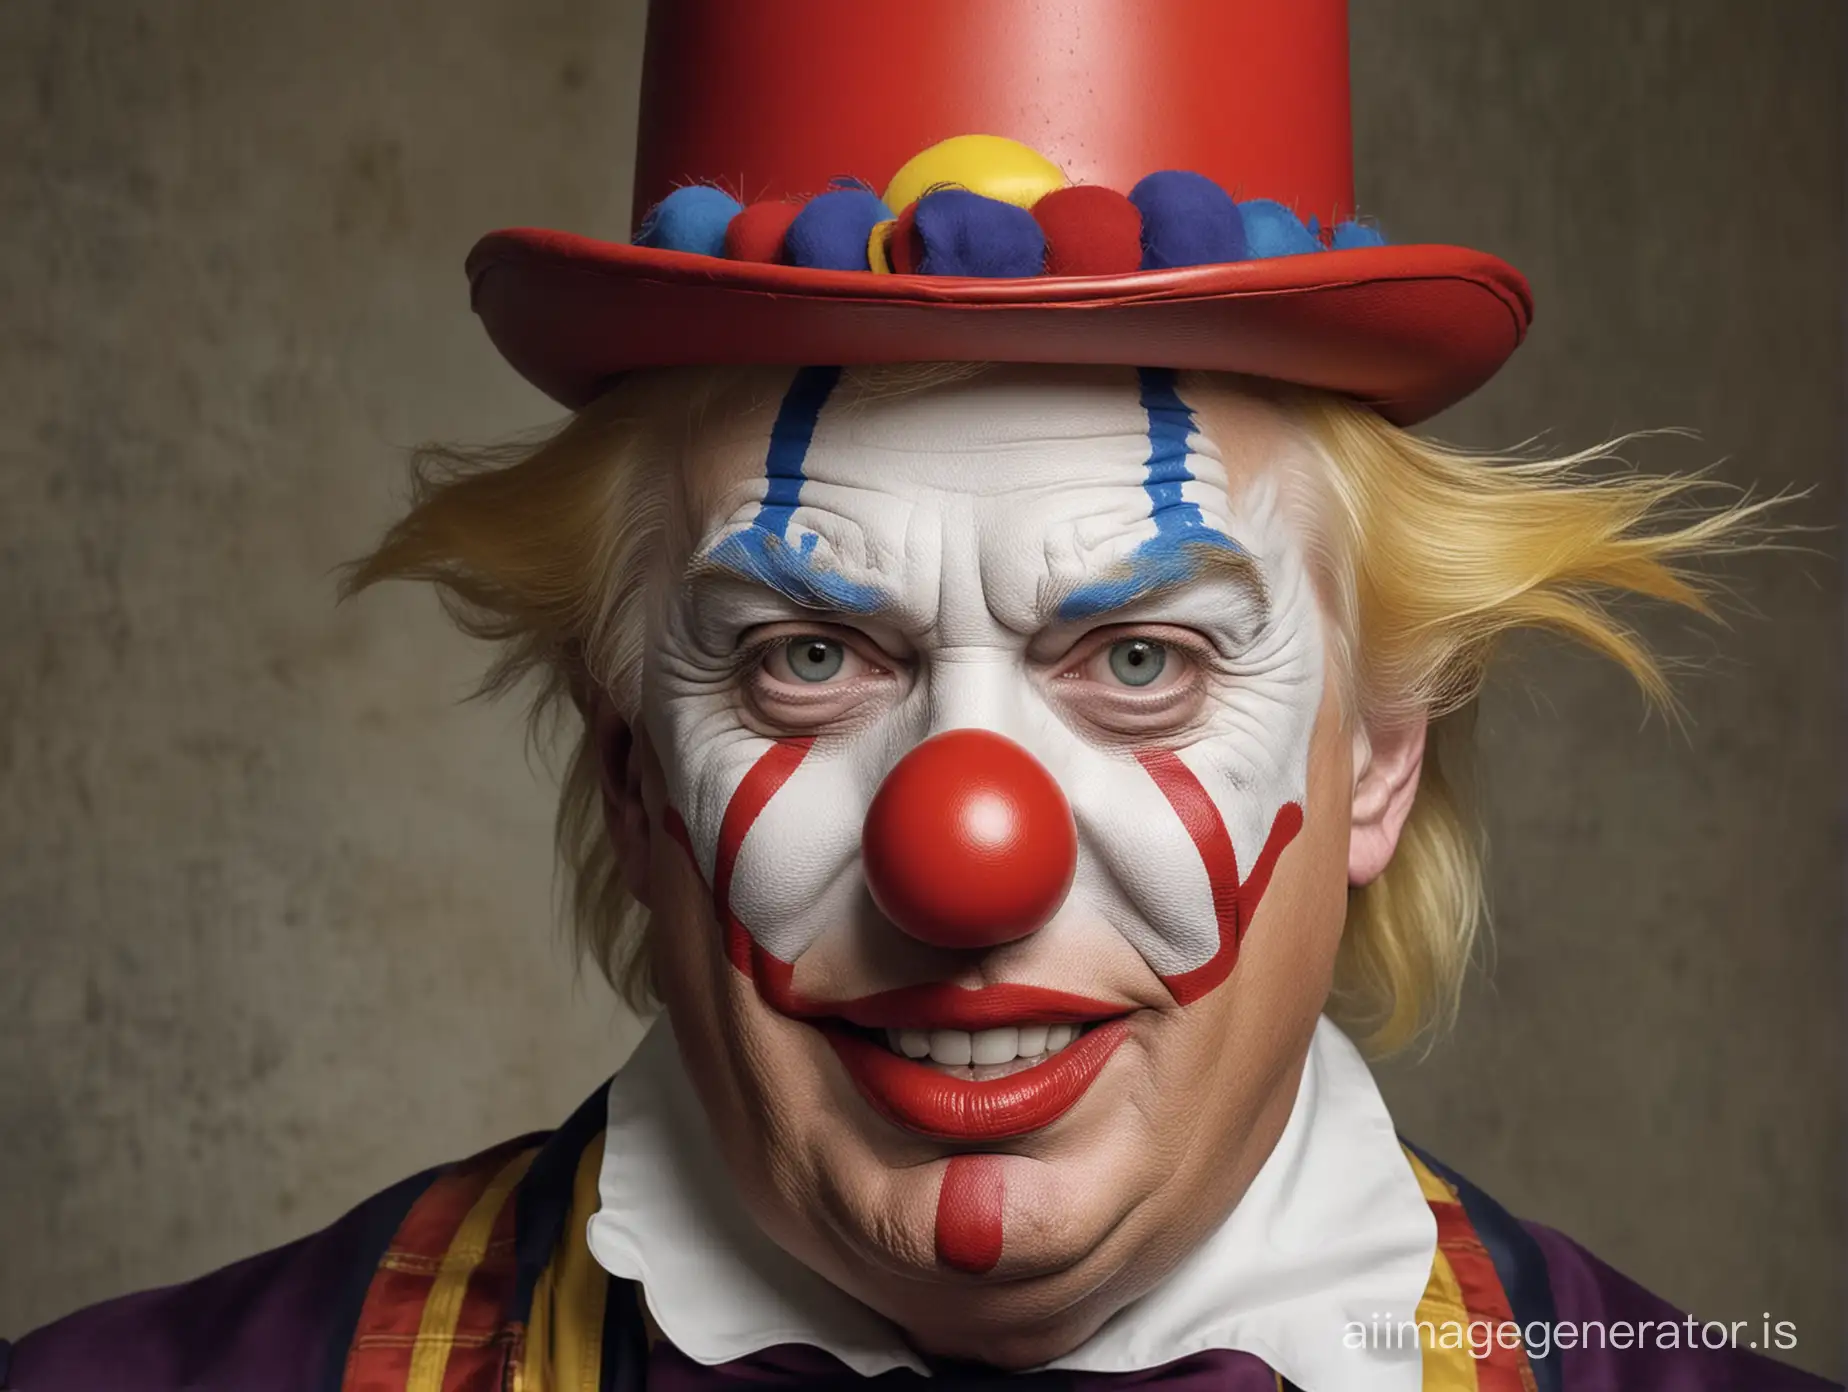 Donald trump as a clown